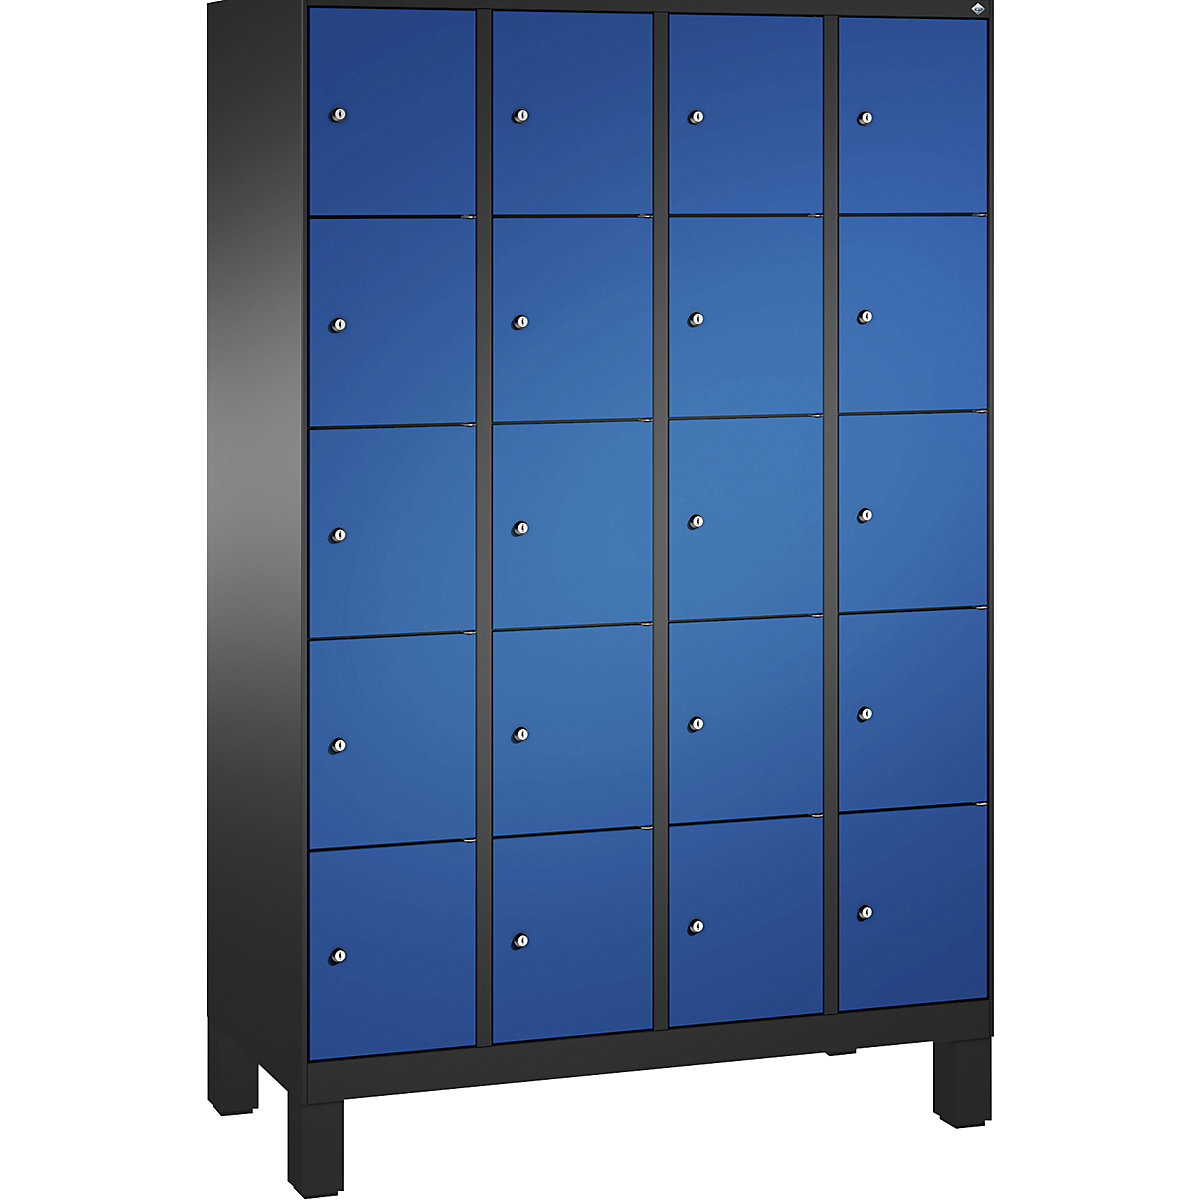 Armoire à casiers sur pieds EVOLO – C+P, 4 compartiments, 5 casiers chacun, largeur compartiments 300 mm, gris noir / bleu gentiane-13